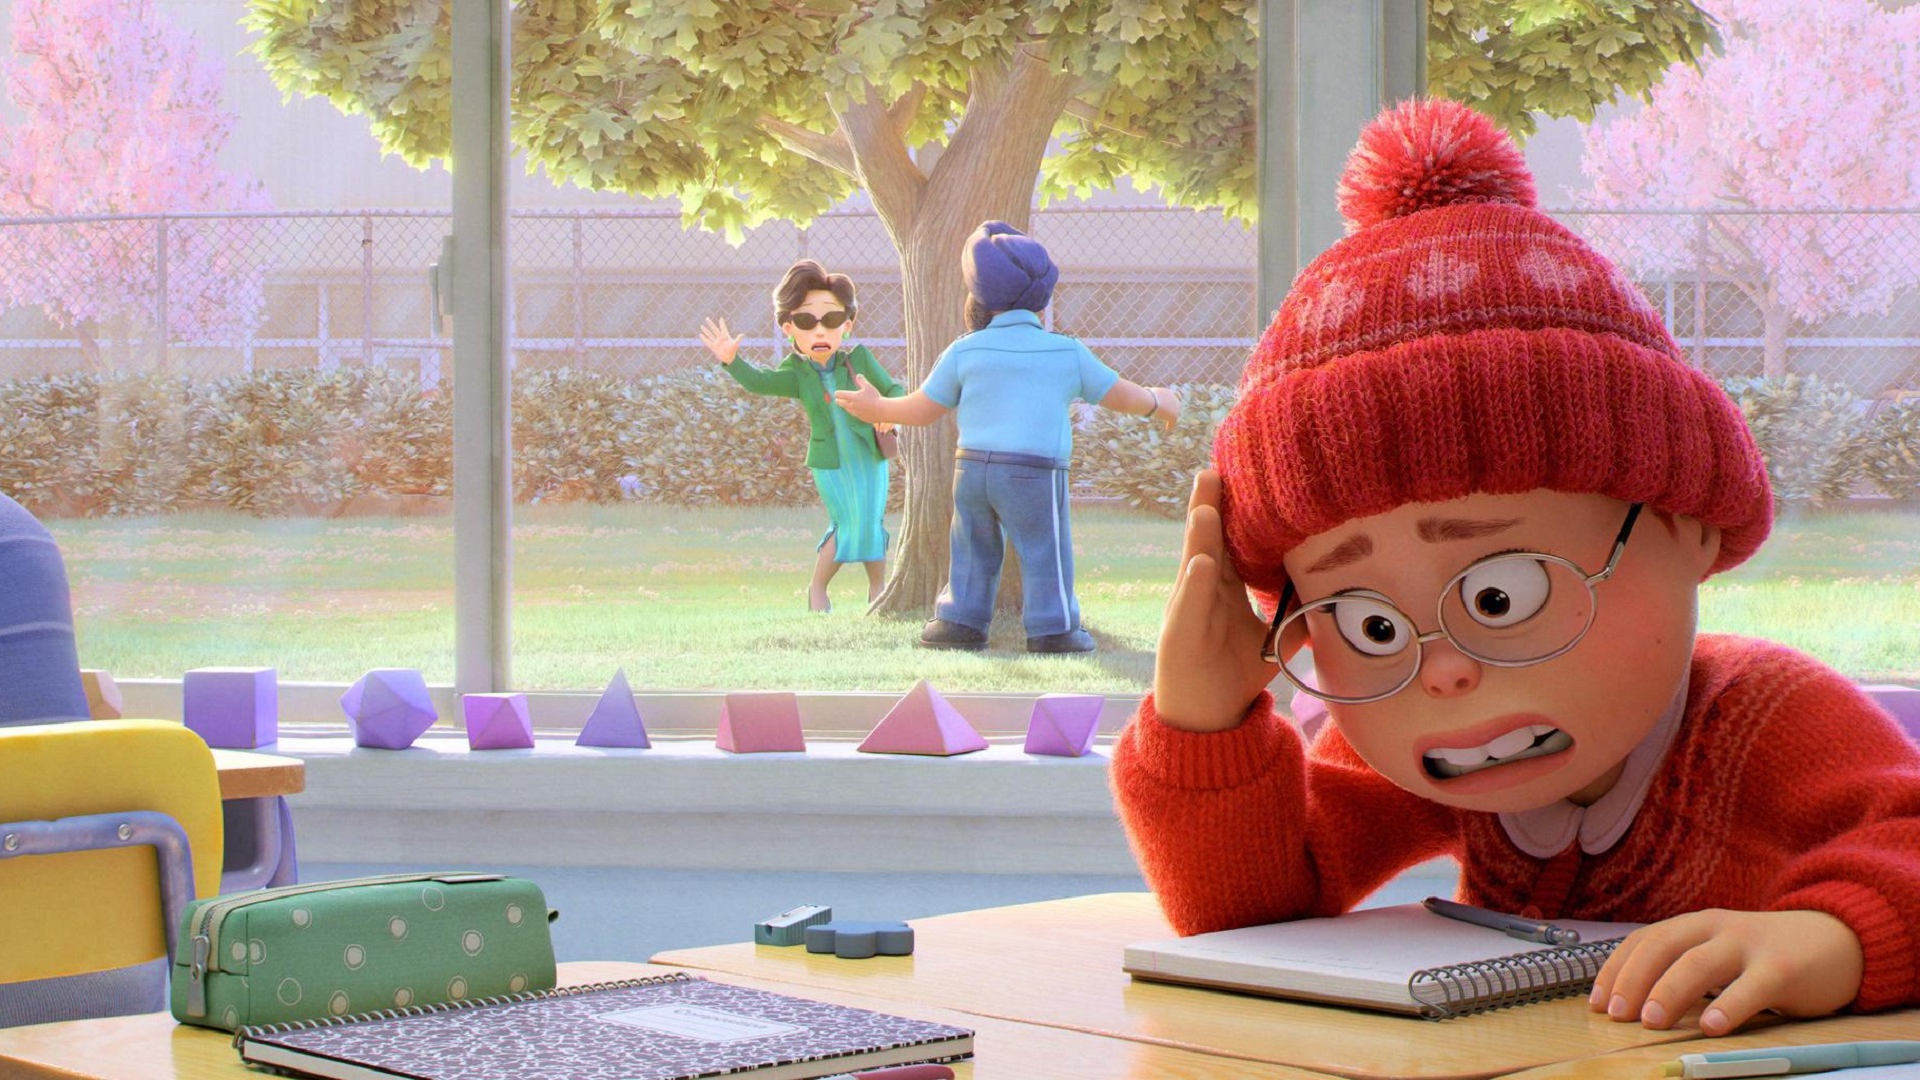 Este es el primer tráiler de Red, la próxima película de Disney Pixar